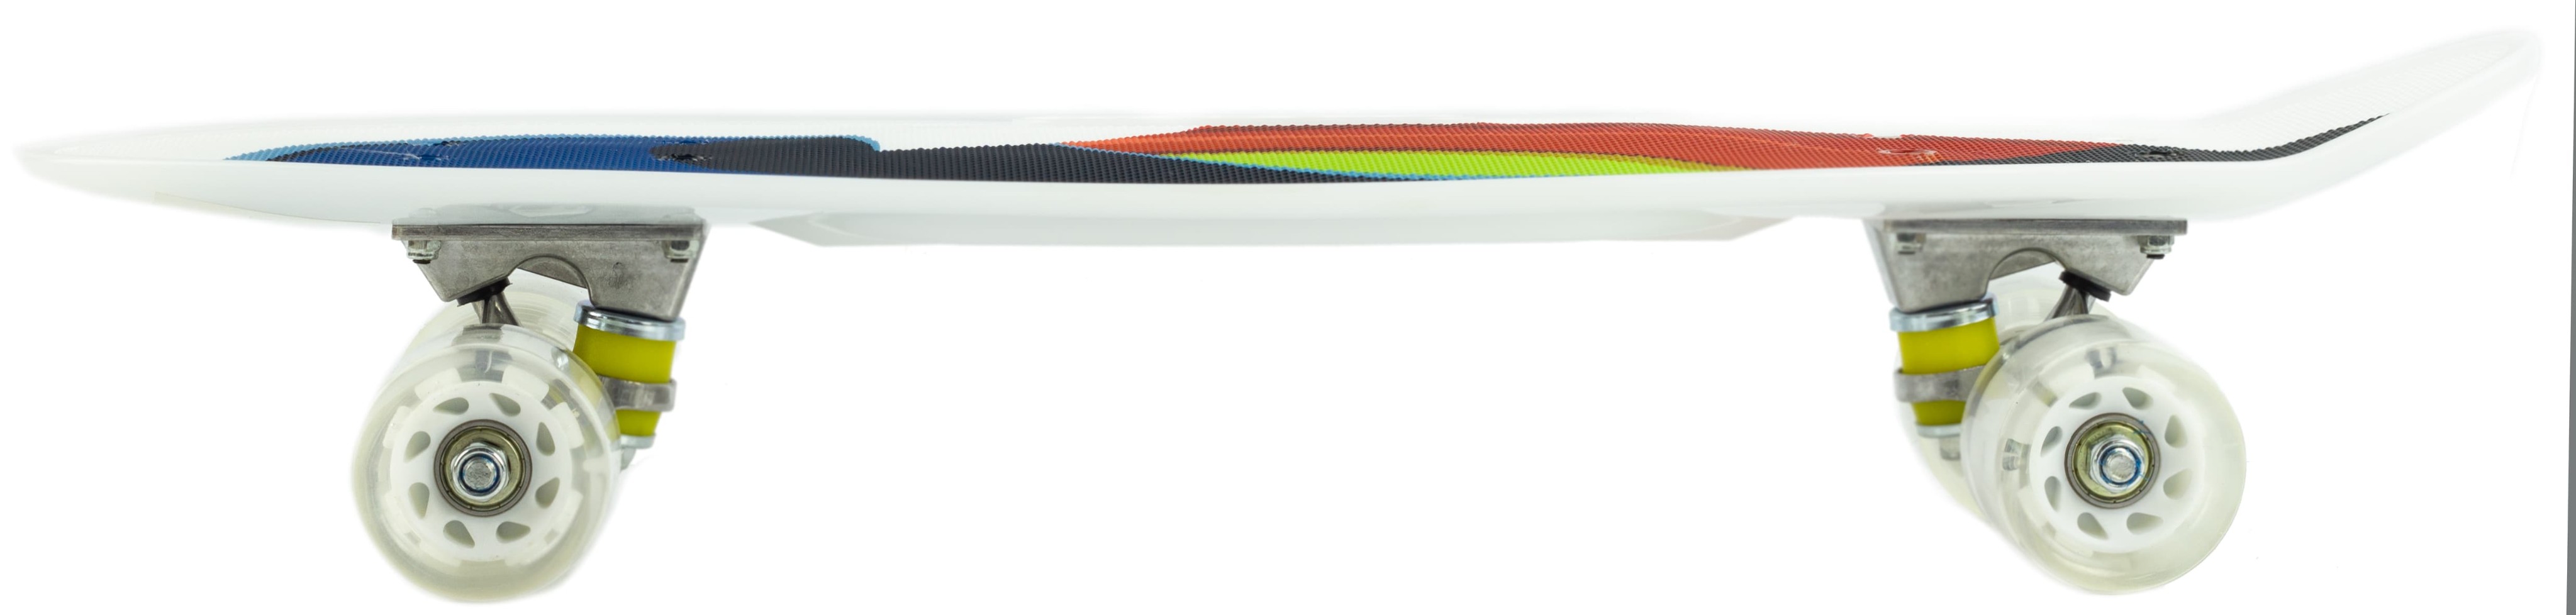 Пенни борд со светящимися колесами и ручкой для переноски, 55 см. S00165 / Белый